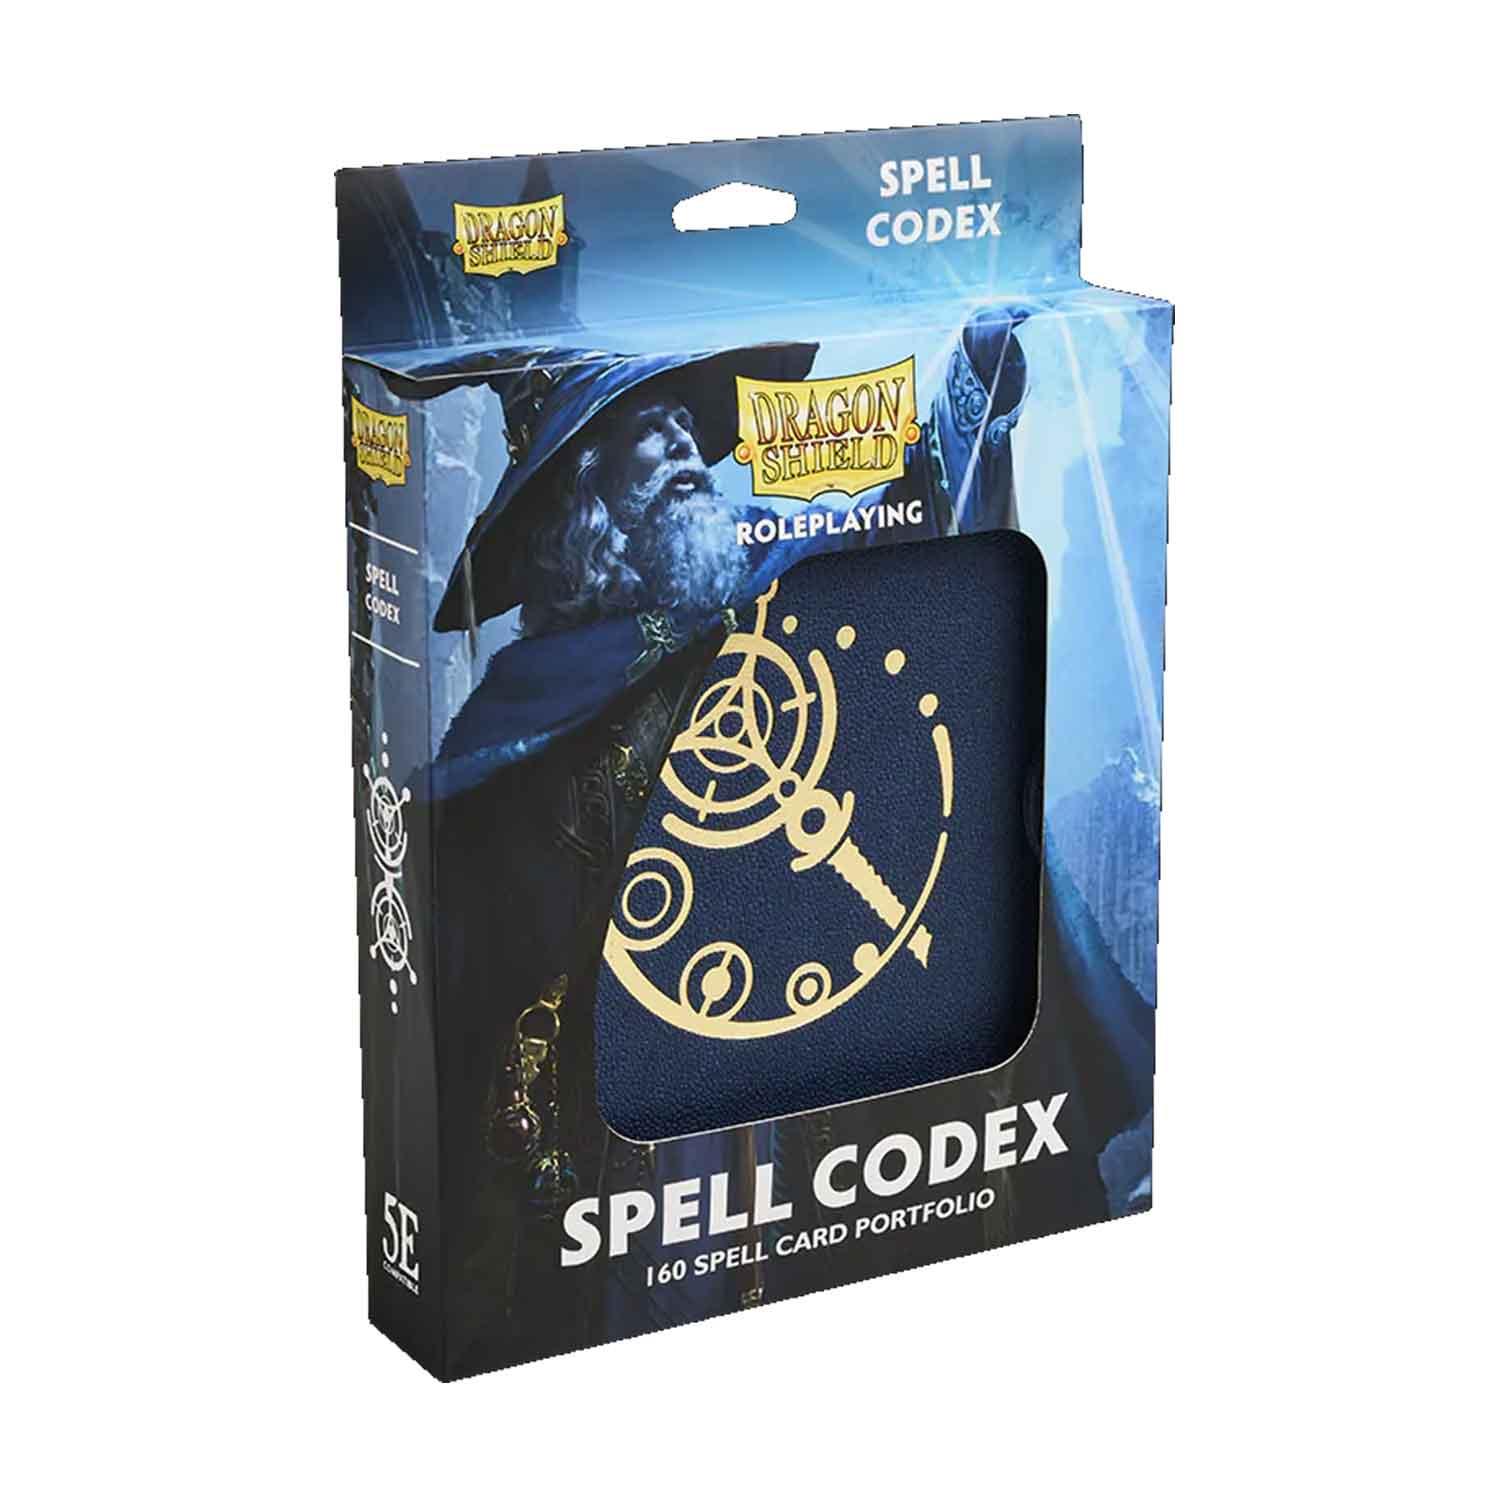 Spell Codex Midnight Blue Box